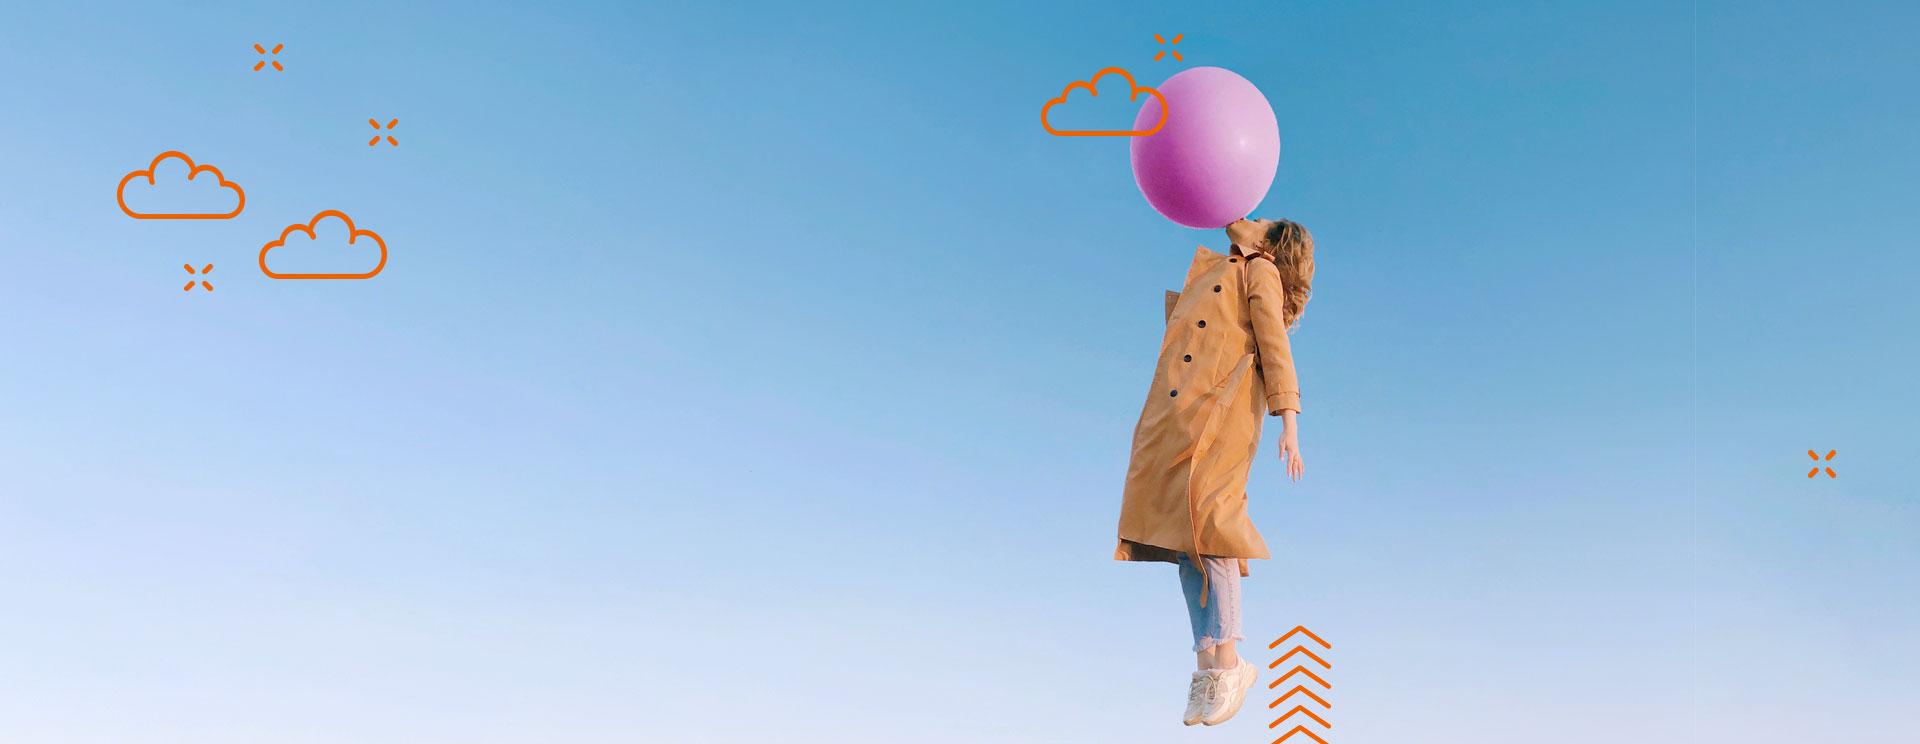 Grafik: Frau hängt an einem Ballon in einem Himmel mit Wolken